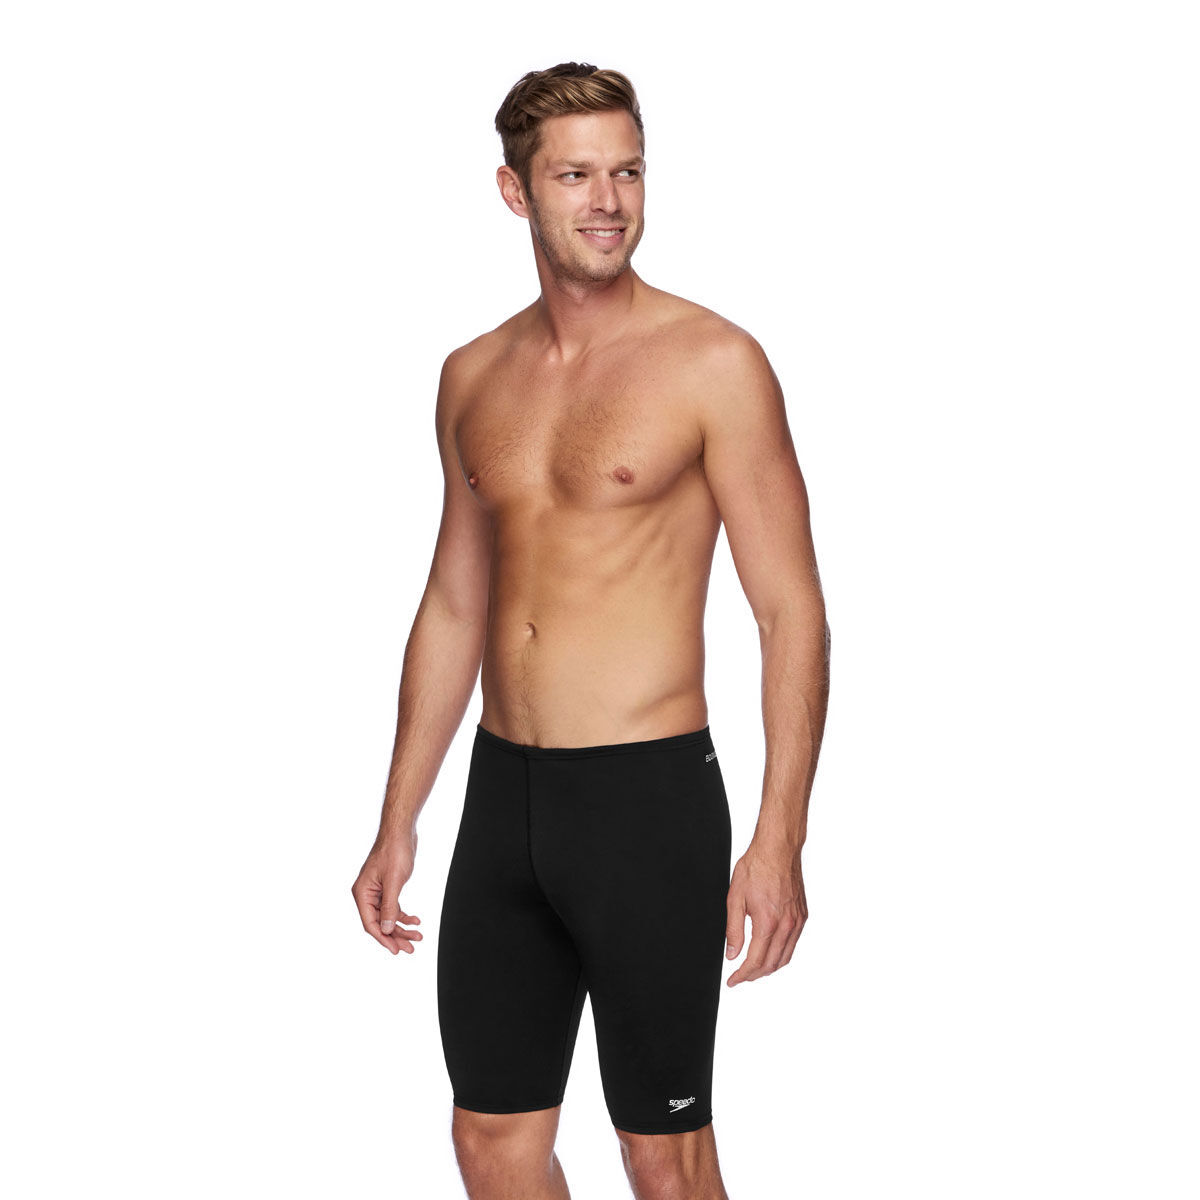 Zoggs Mens Trunks Jammer Black Swimwear Sportswear Tight Fit Small 30" New 